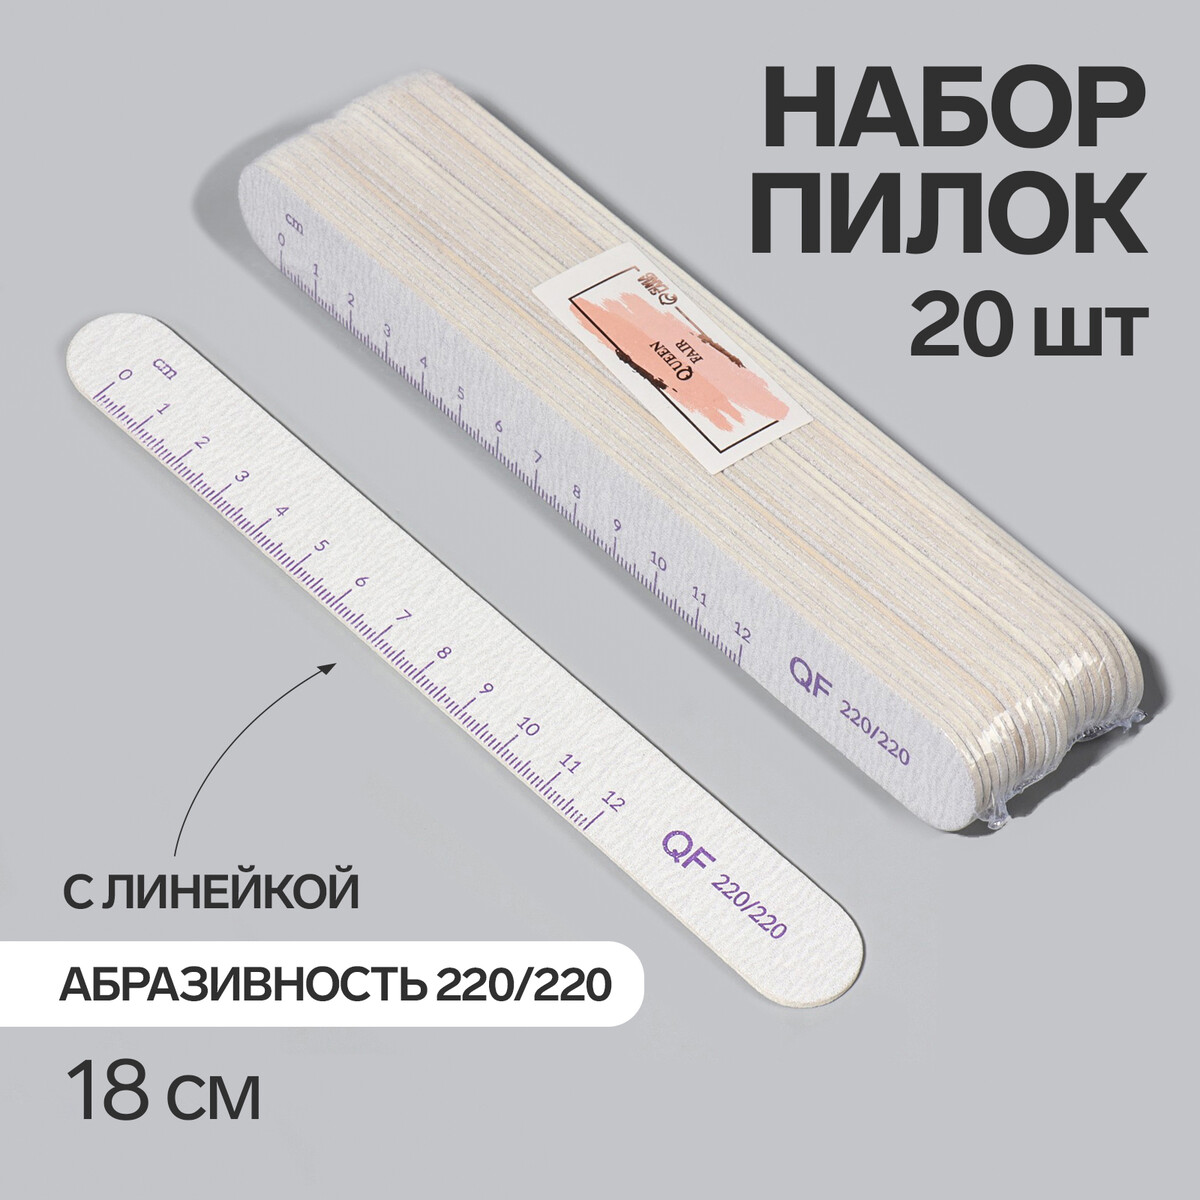 Пилка-наждак, набор 20 шт, абразивность 220, 18 см, цвет серый/фиолетовый набор для фитнеса onlitop эспандер ленточный скакалка скоростная фиолетовый